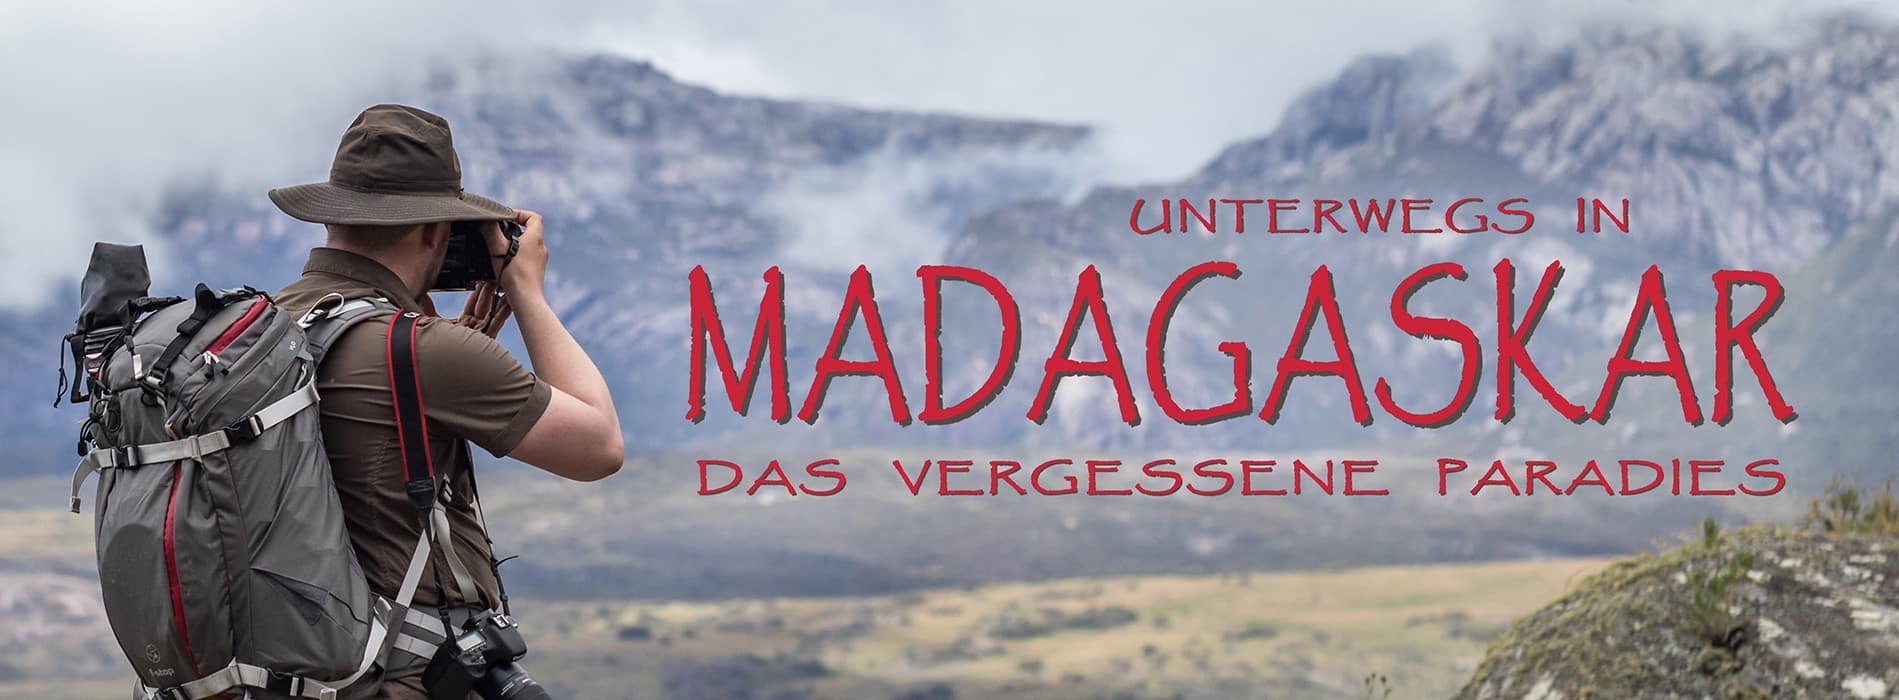 Voyage Photographique à Madagascar